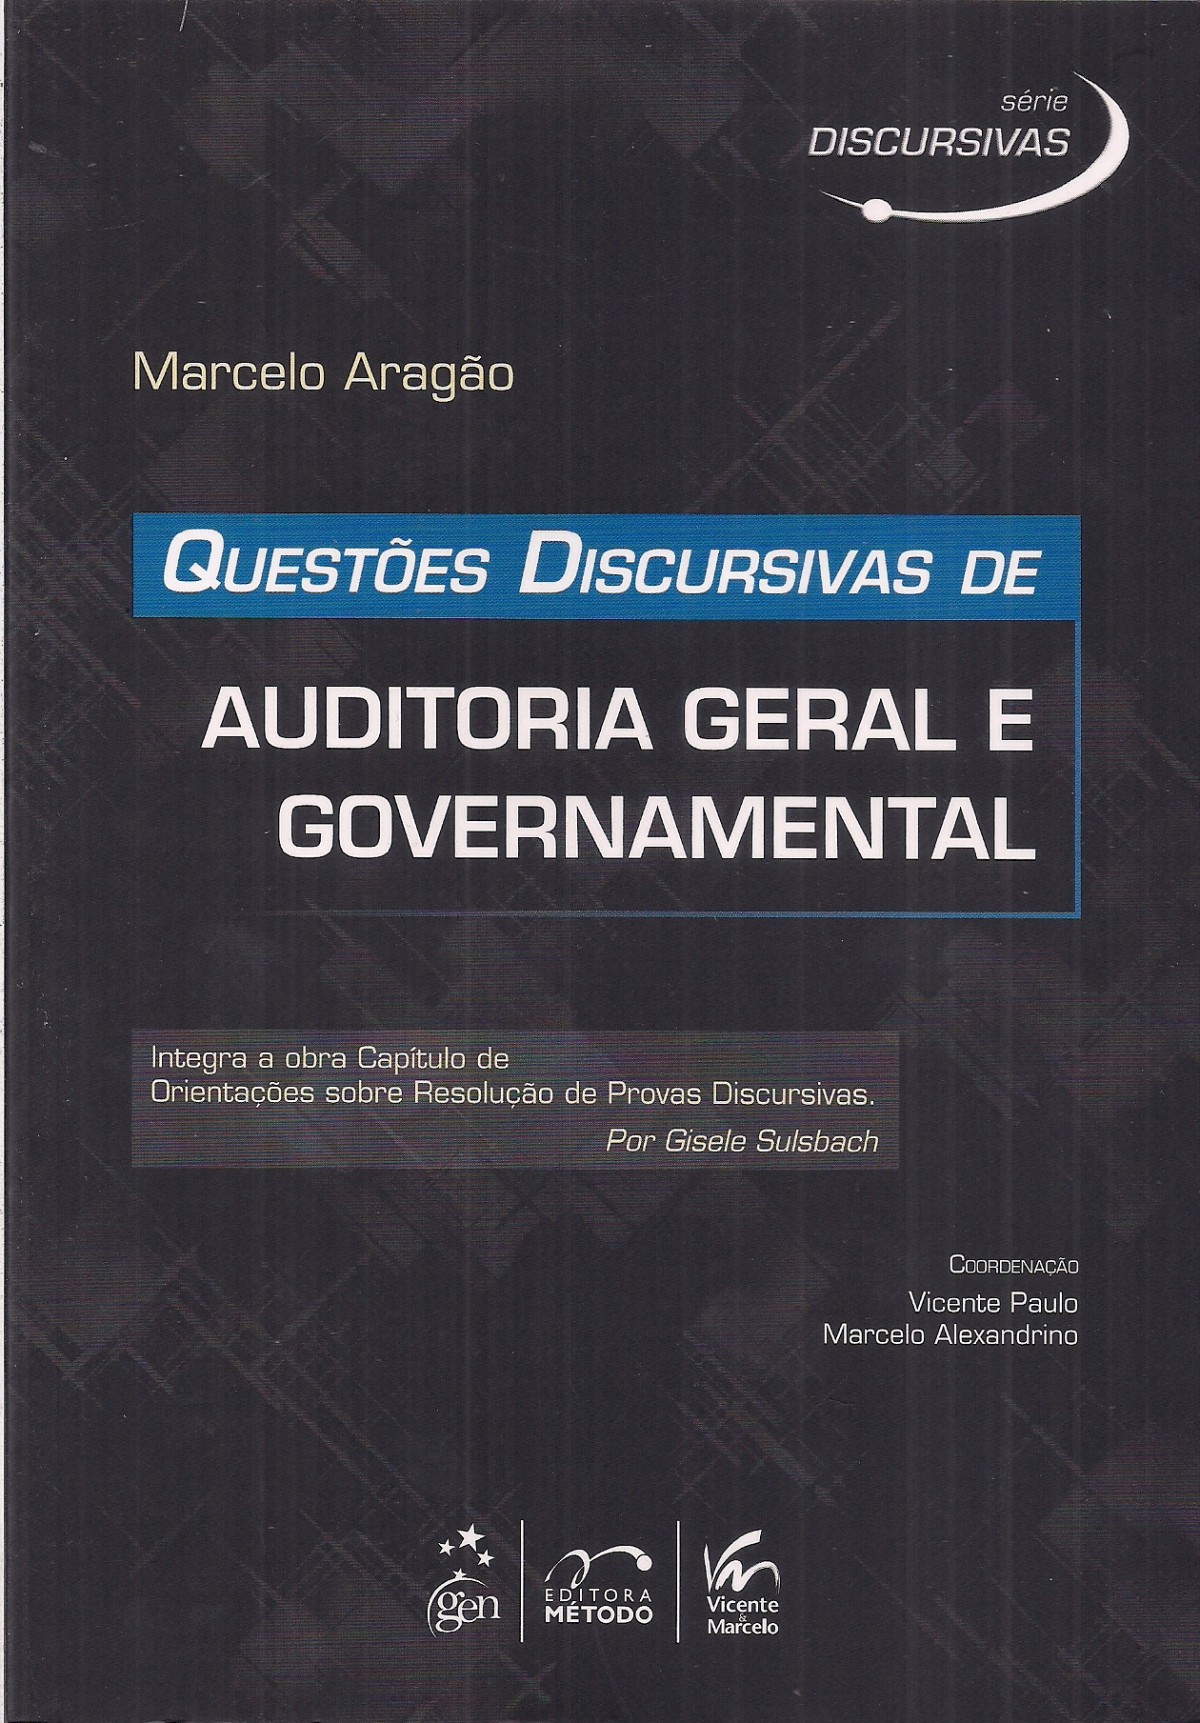 Foto 1 - Questões Discursivas de Auditoria Geral e Governamental